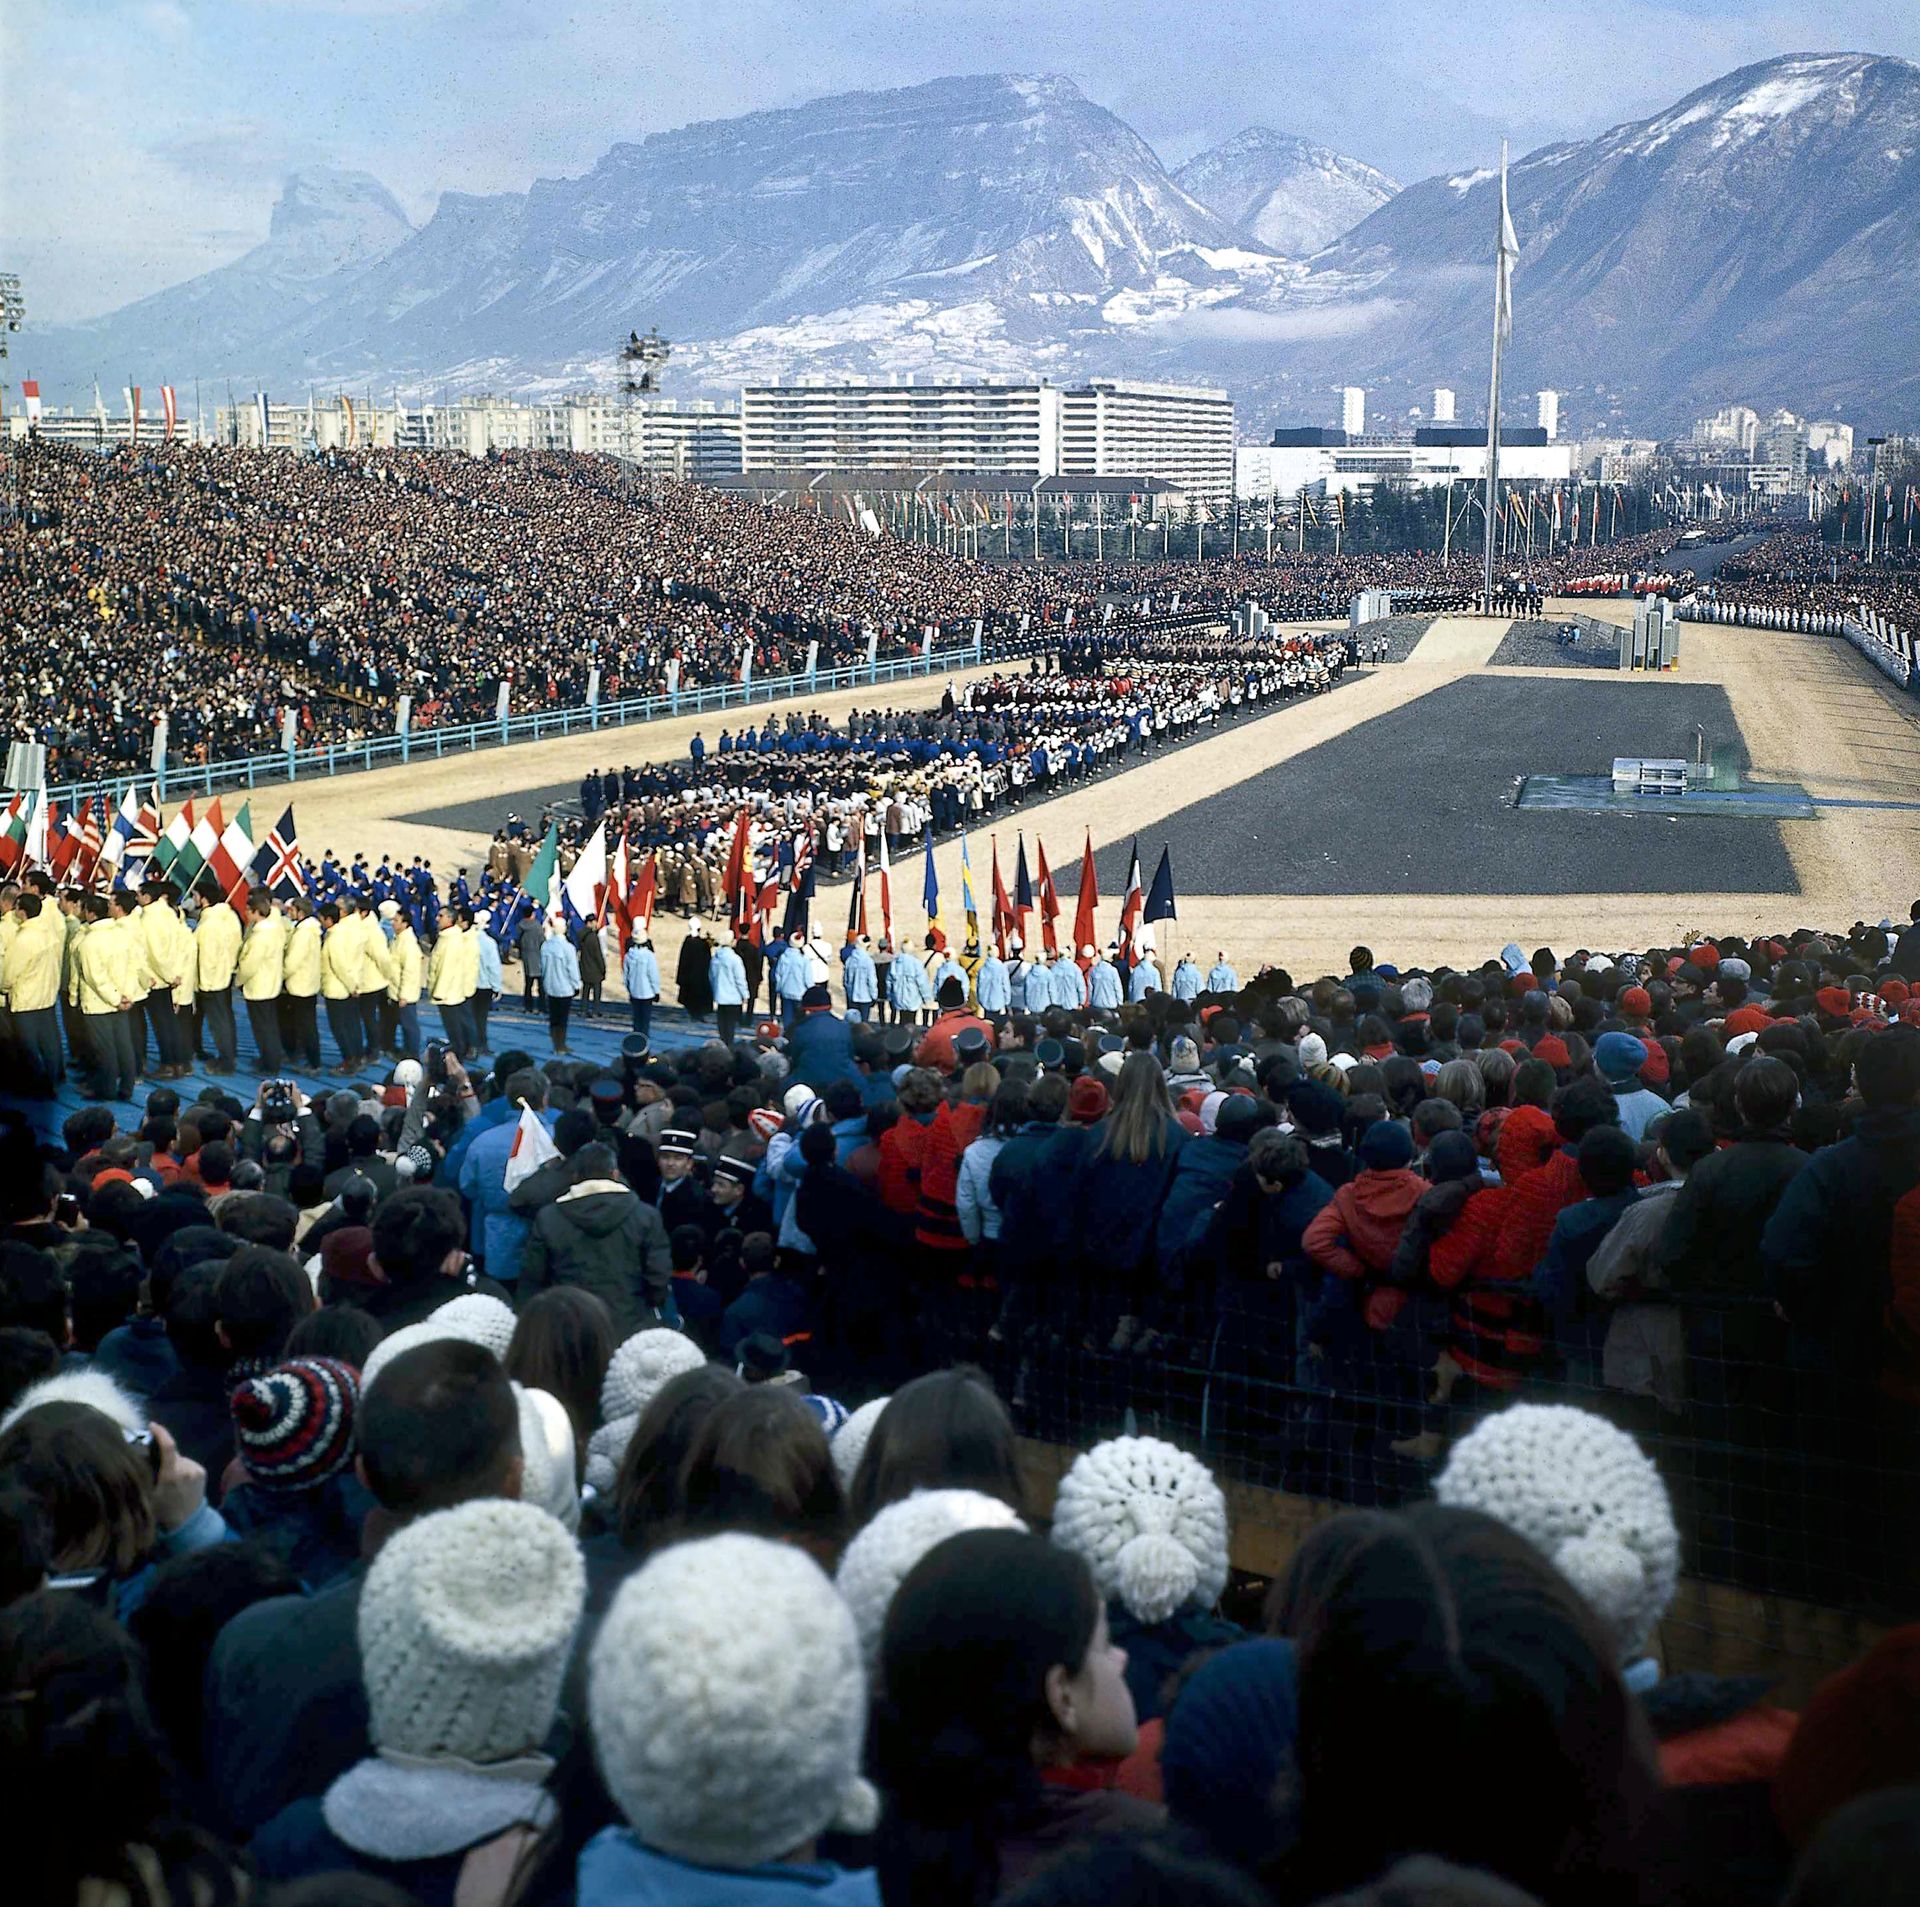 Null Grenoble 1968. Eröffnungsfeier © L'Équipe 6. Februar 1968.
"Der erste große&hellip;